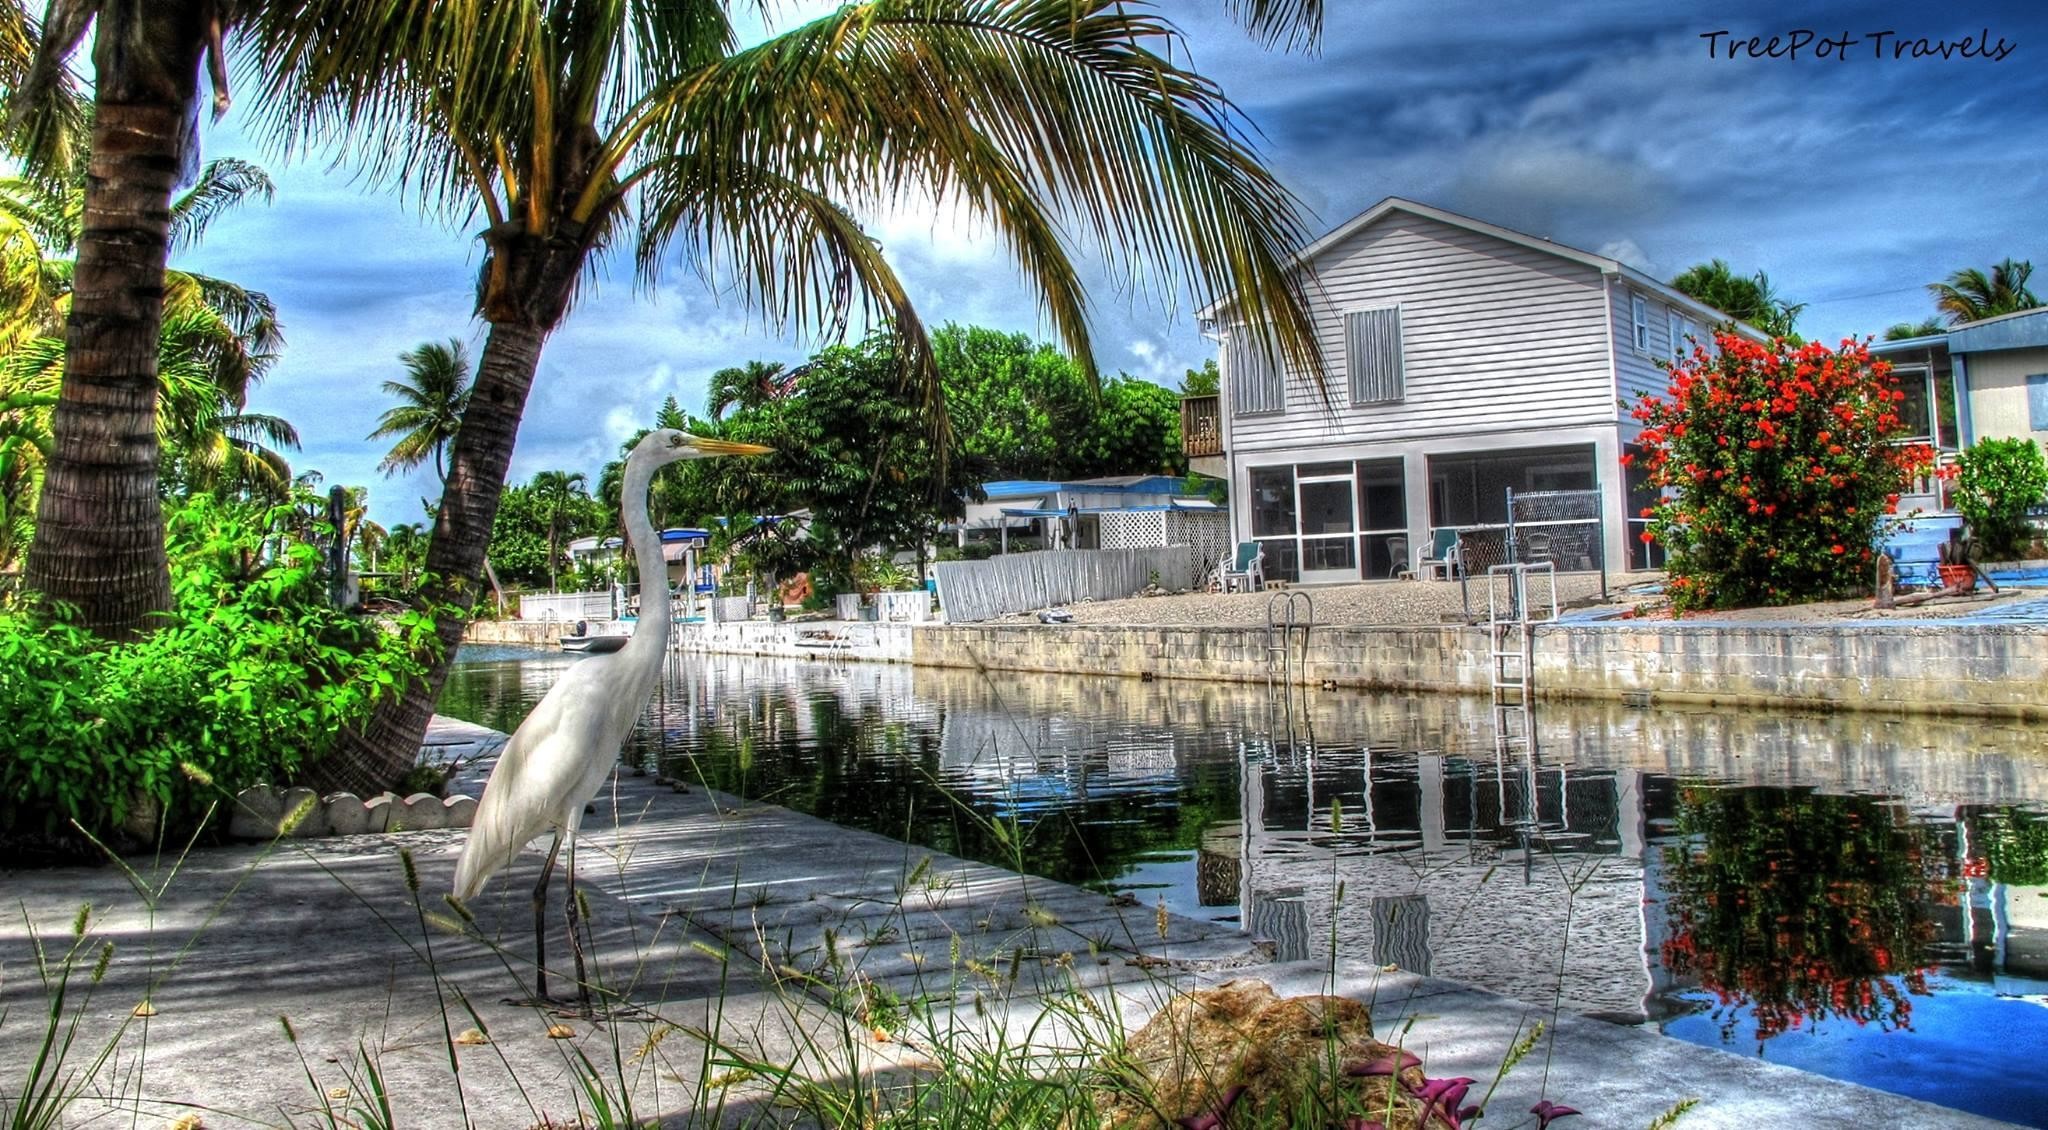 The Florida Keys: Khám phá những cánh đồng bãi biển phía nam nước Mỹ với Florida Keys. Được ví như là viên ngọc rực rỡ của Florida, Florida Keys là một trong những điểm du lịch đẹp và nổi tiếng nhất. Hãy xem hình ảnh để chiêm ngưỡng những cảnh quan độc đáo của Florida Keys.